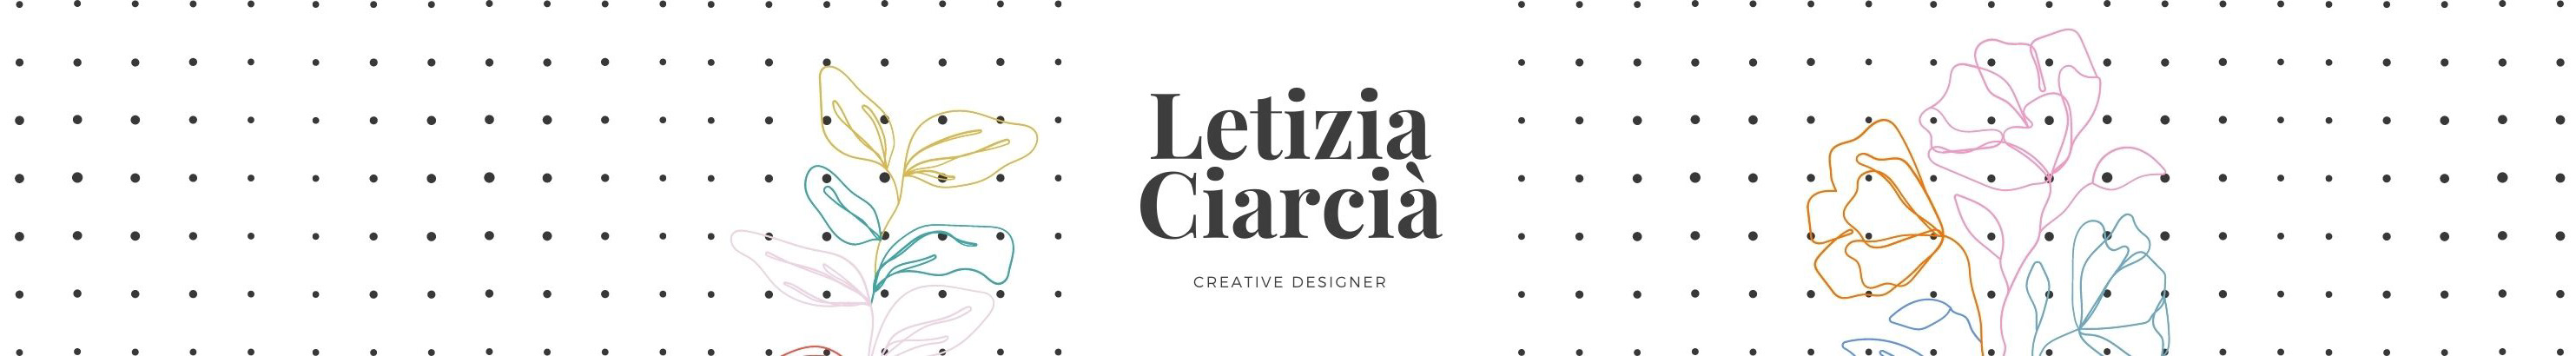 Letizia Ciarcià's profile banner